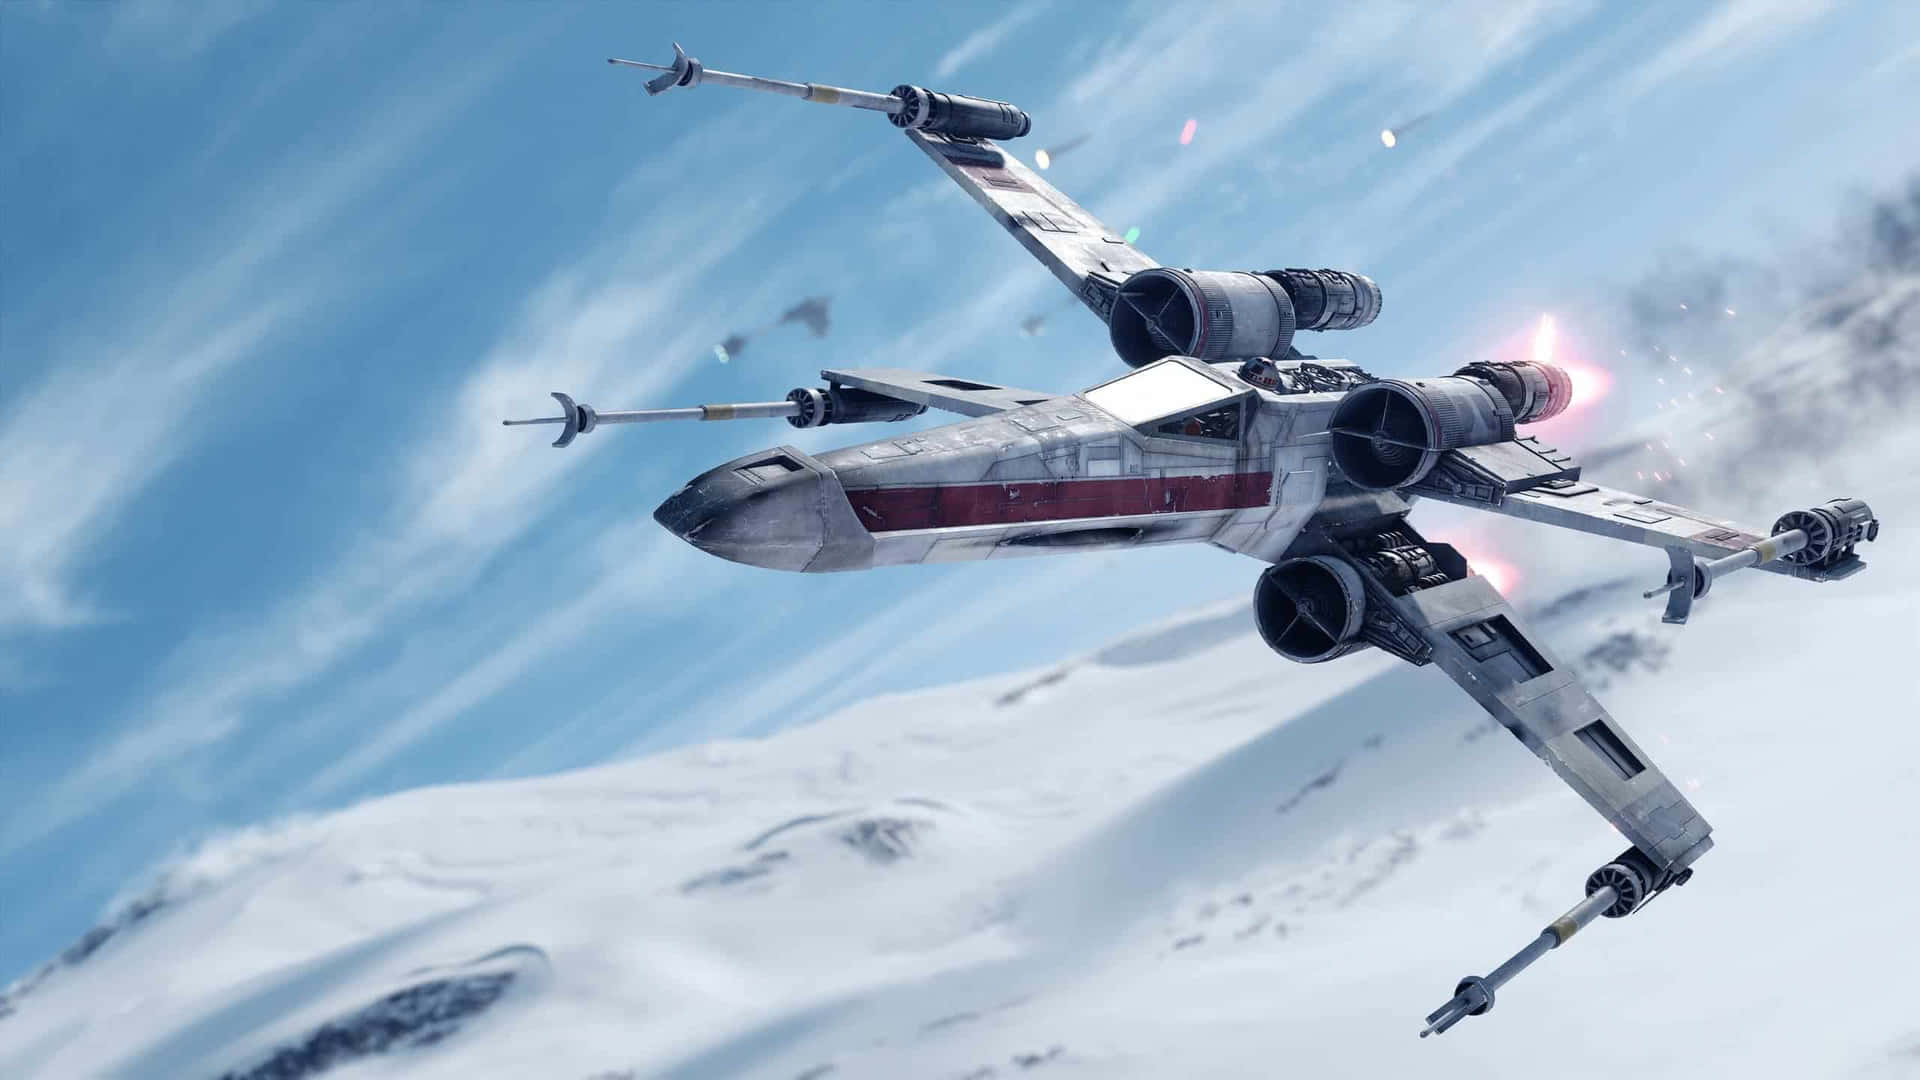 Einx-wing-pilot Trotzt Der Kälte Des Weltraums, Während Er Seine Mission Annimmt. Wallpaper